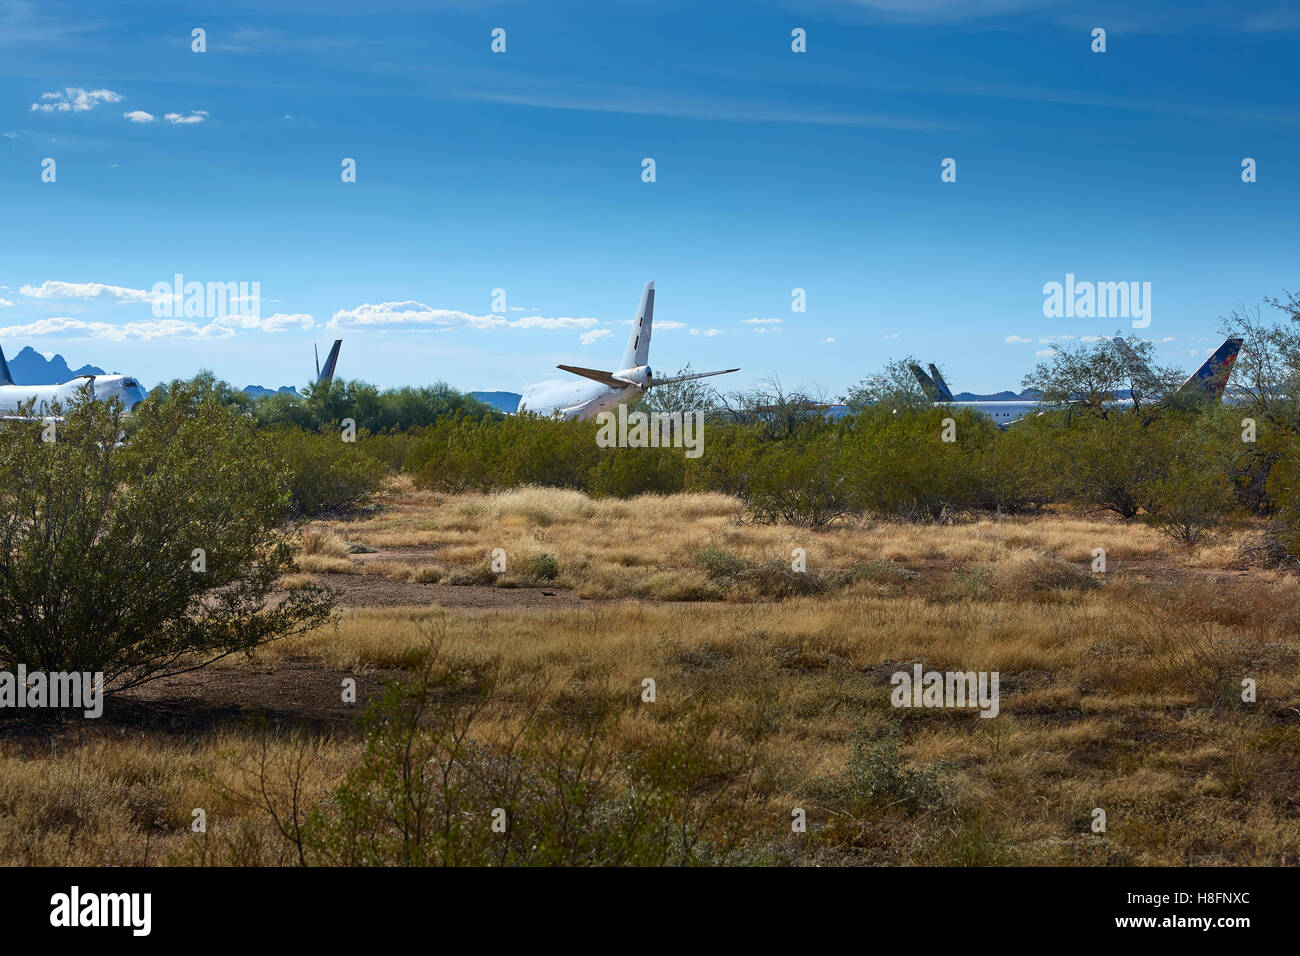 Aircraft Boneyard At Pinal Air Park, Tucson, Arizona. Stock Photo